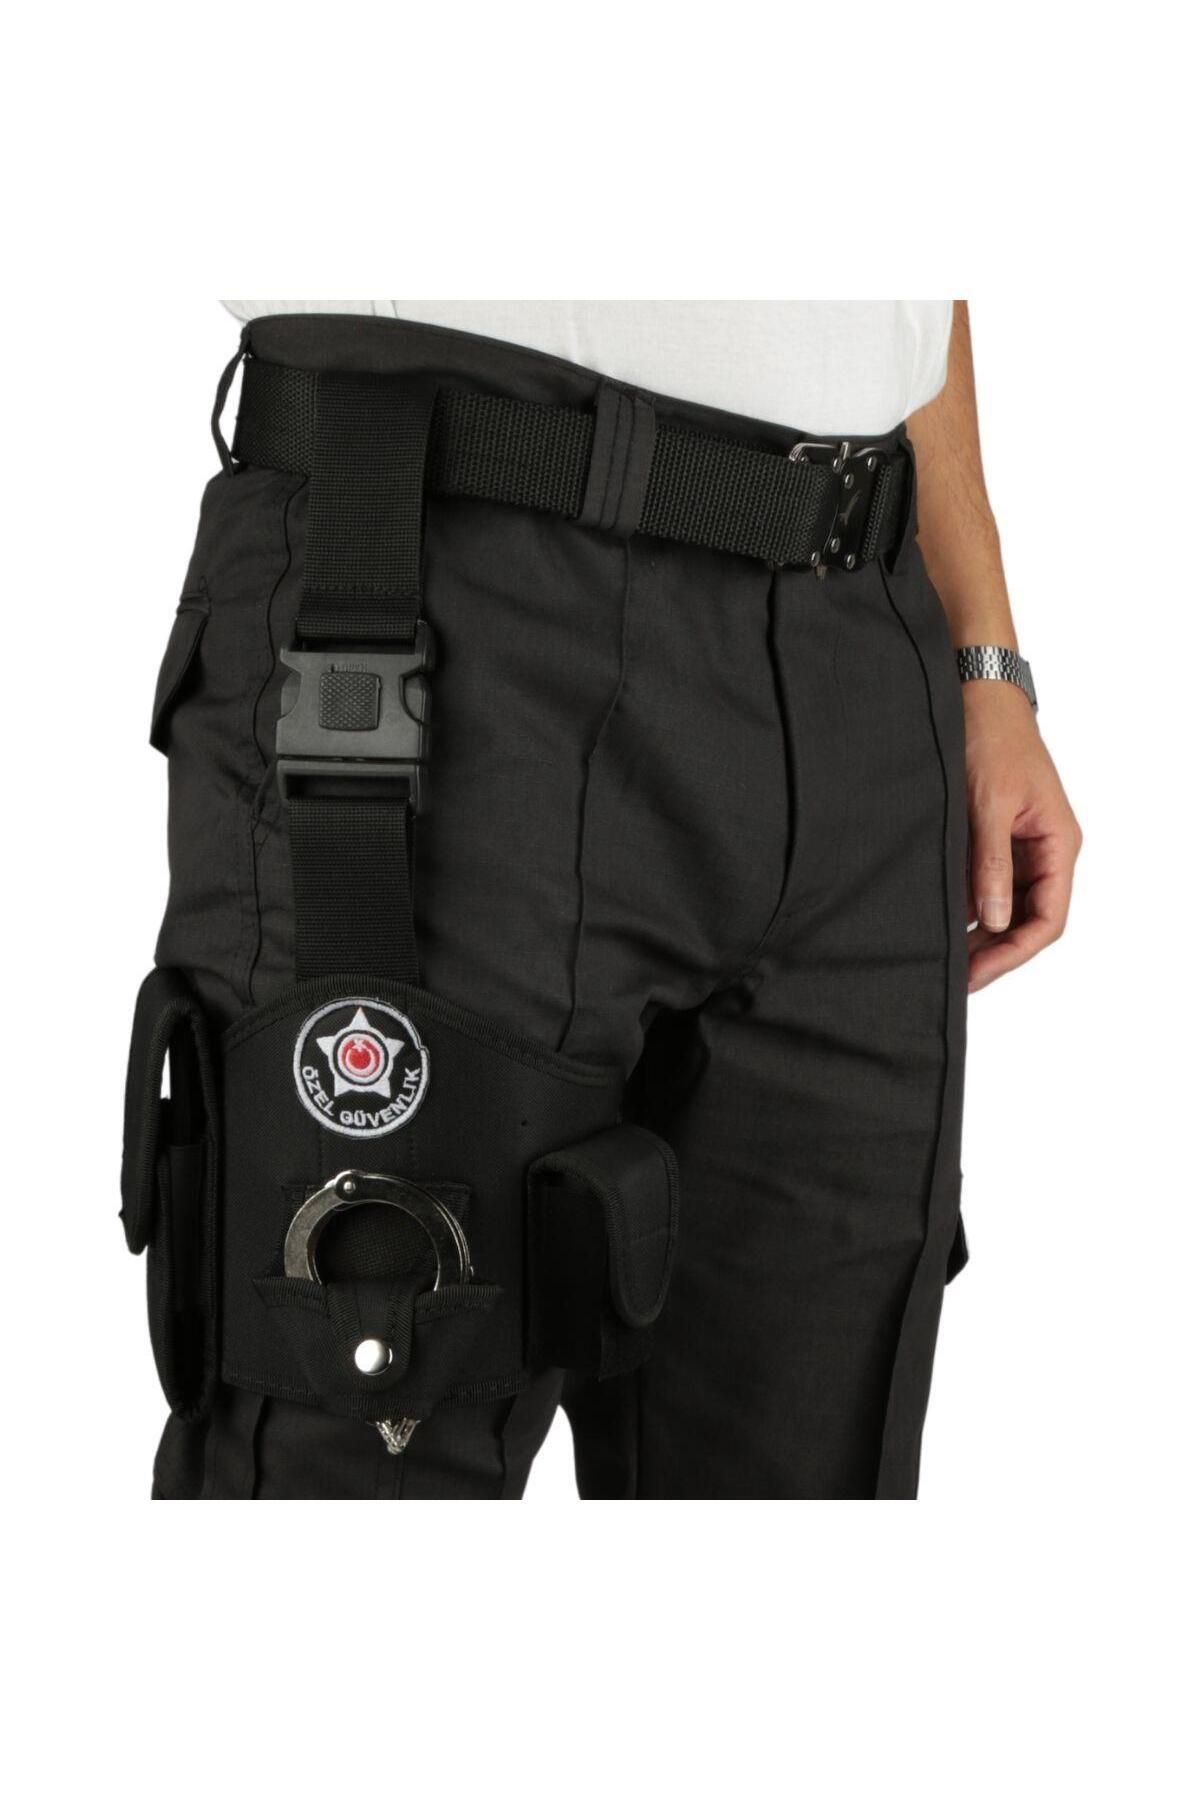 Polis Sepeti Özel Güvenlik Bacak Kılıfı Siyah